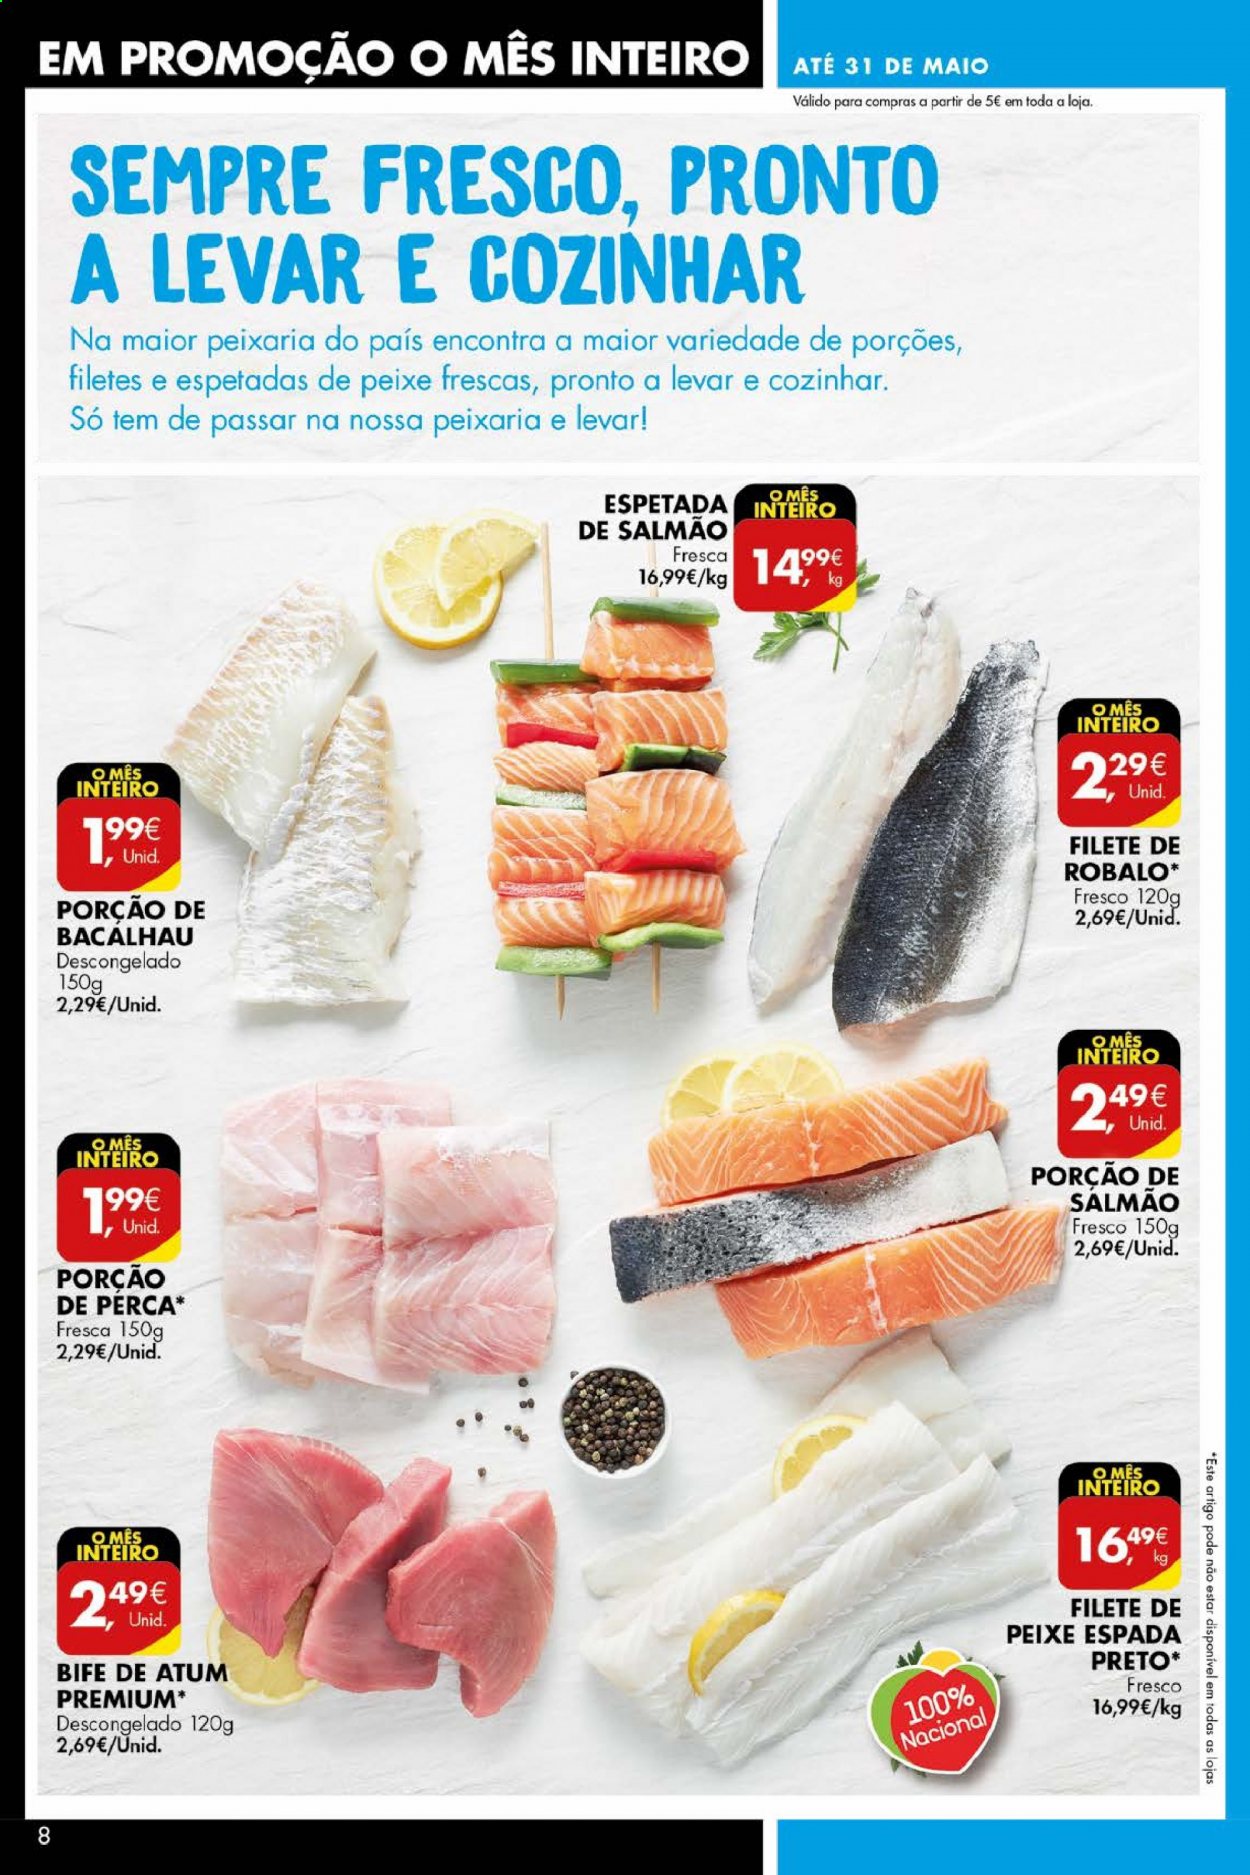 thumbnail - Folheto Pingo Doce - 11.5.2021 - 17.5.2021 - Produtos em promoção - bife, salmão, bacalhau, atum, peixe espada. Página 8.